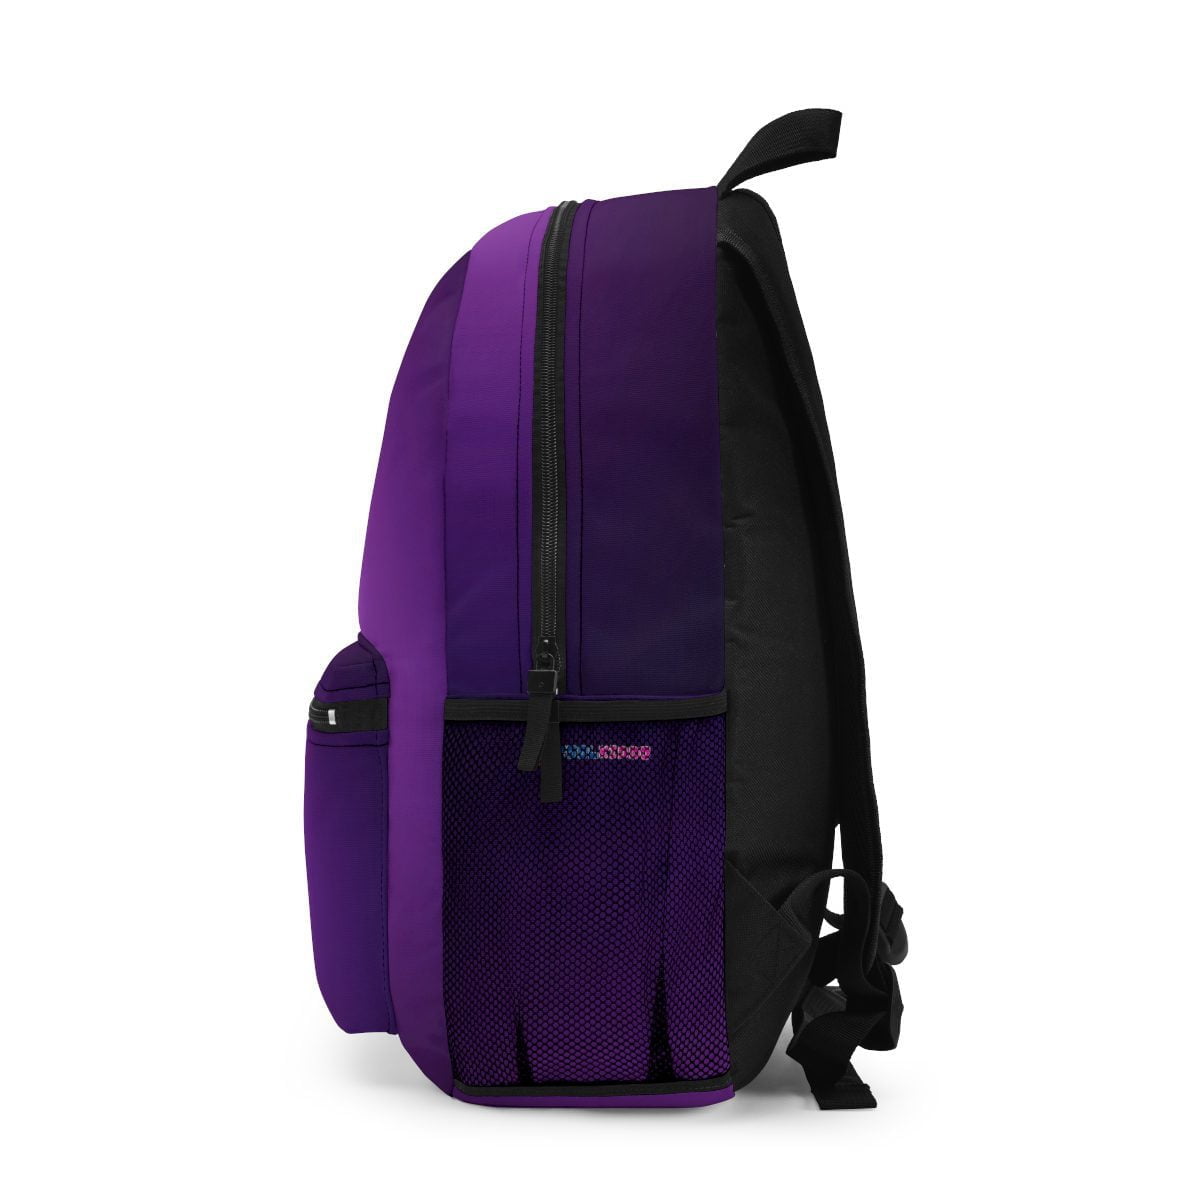 Karina OMG YouTuber Purple Backpack Cool Kiddo 14